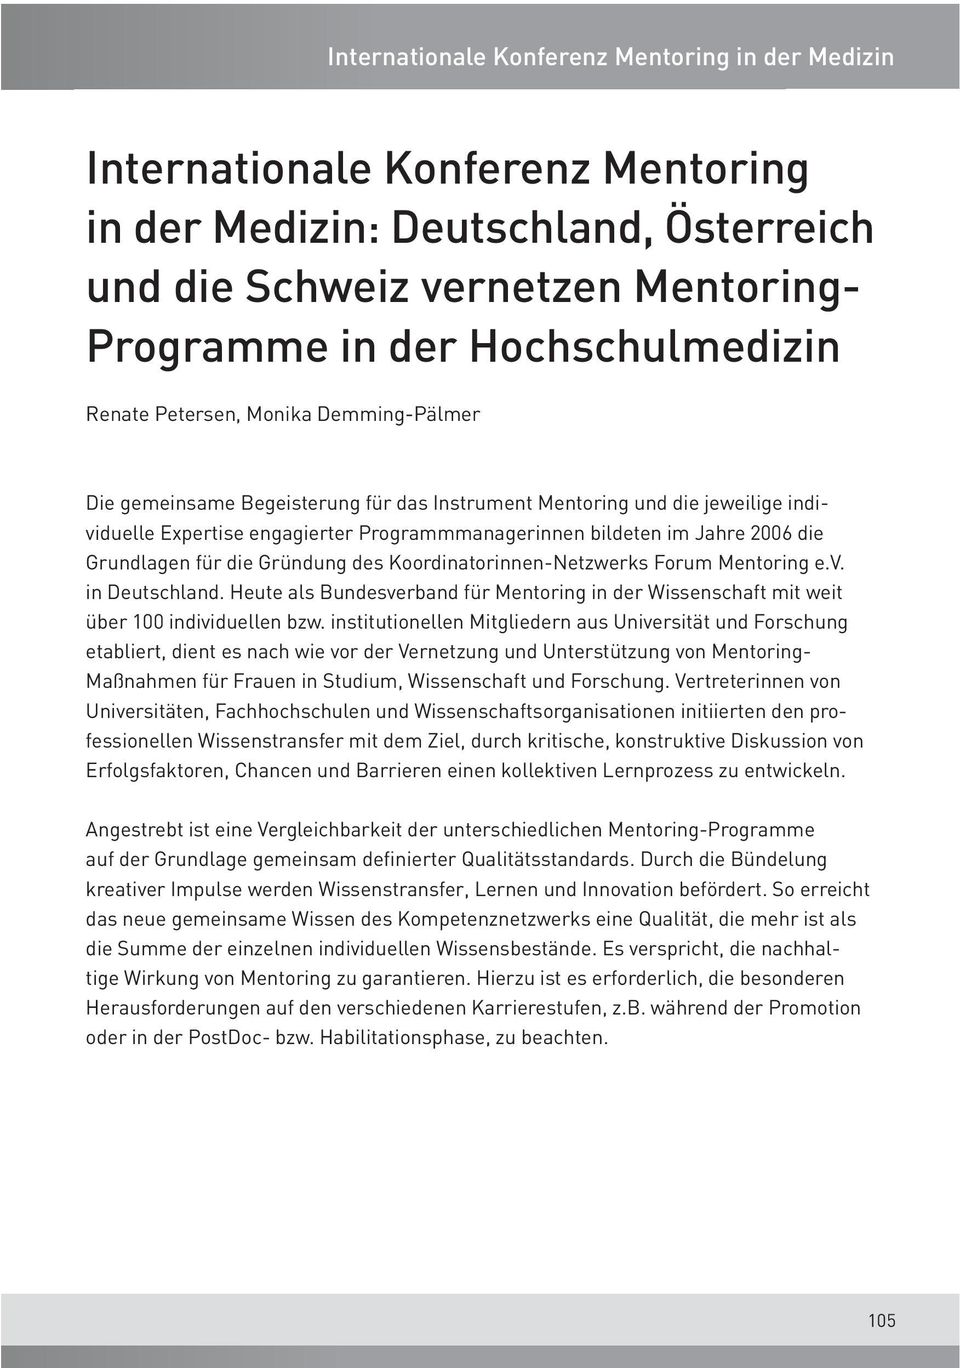 Koordinatorinnen-Netzwerks Forum Mentoring e.v. in Deutschland. Heute als Bundesverband für Mentoring in der Wissenschaft mit weit über 100 individuellen bzw.